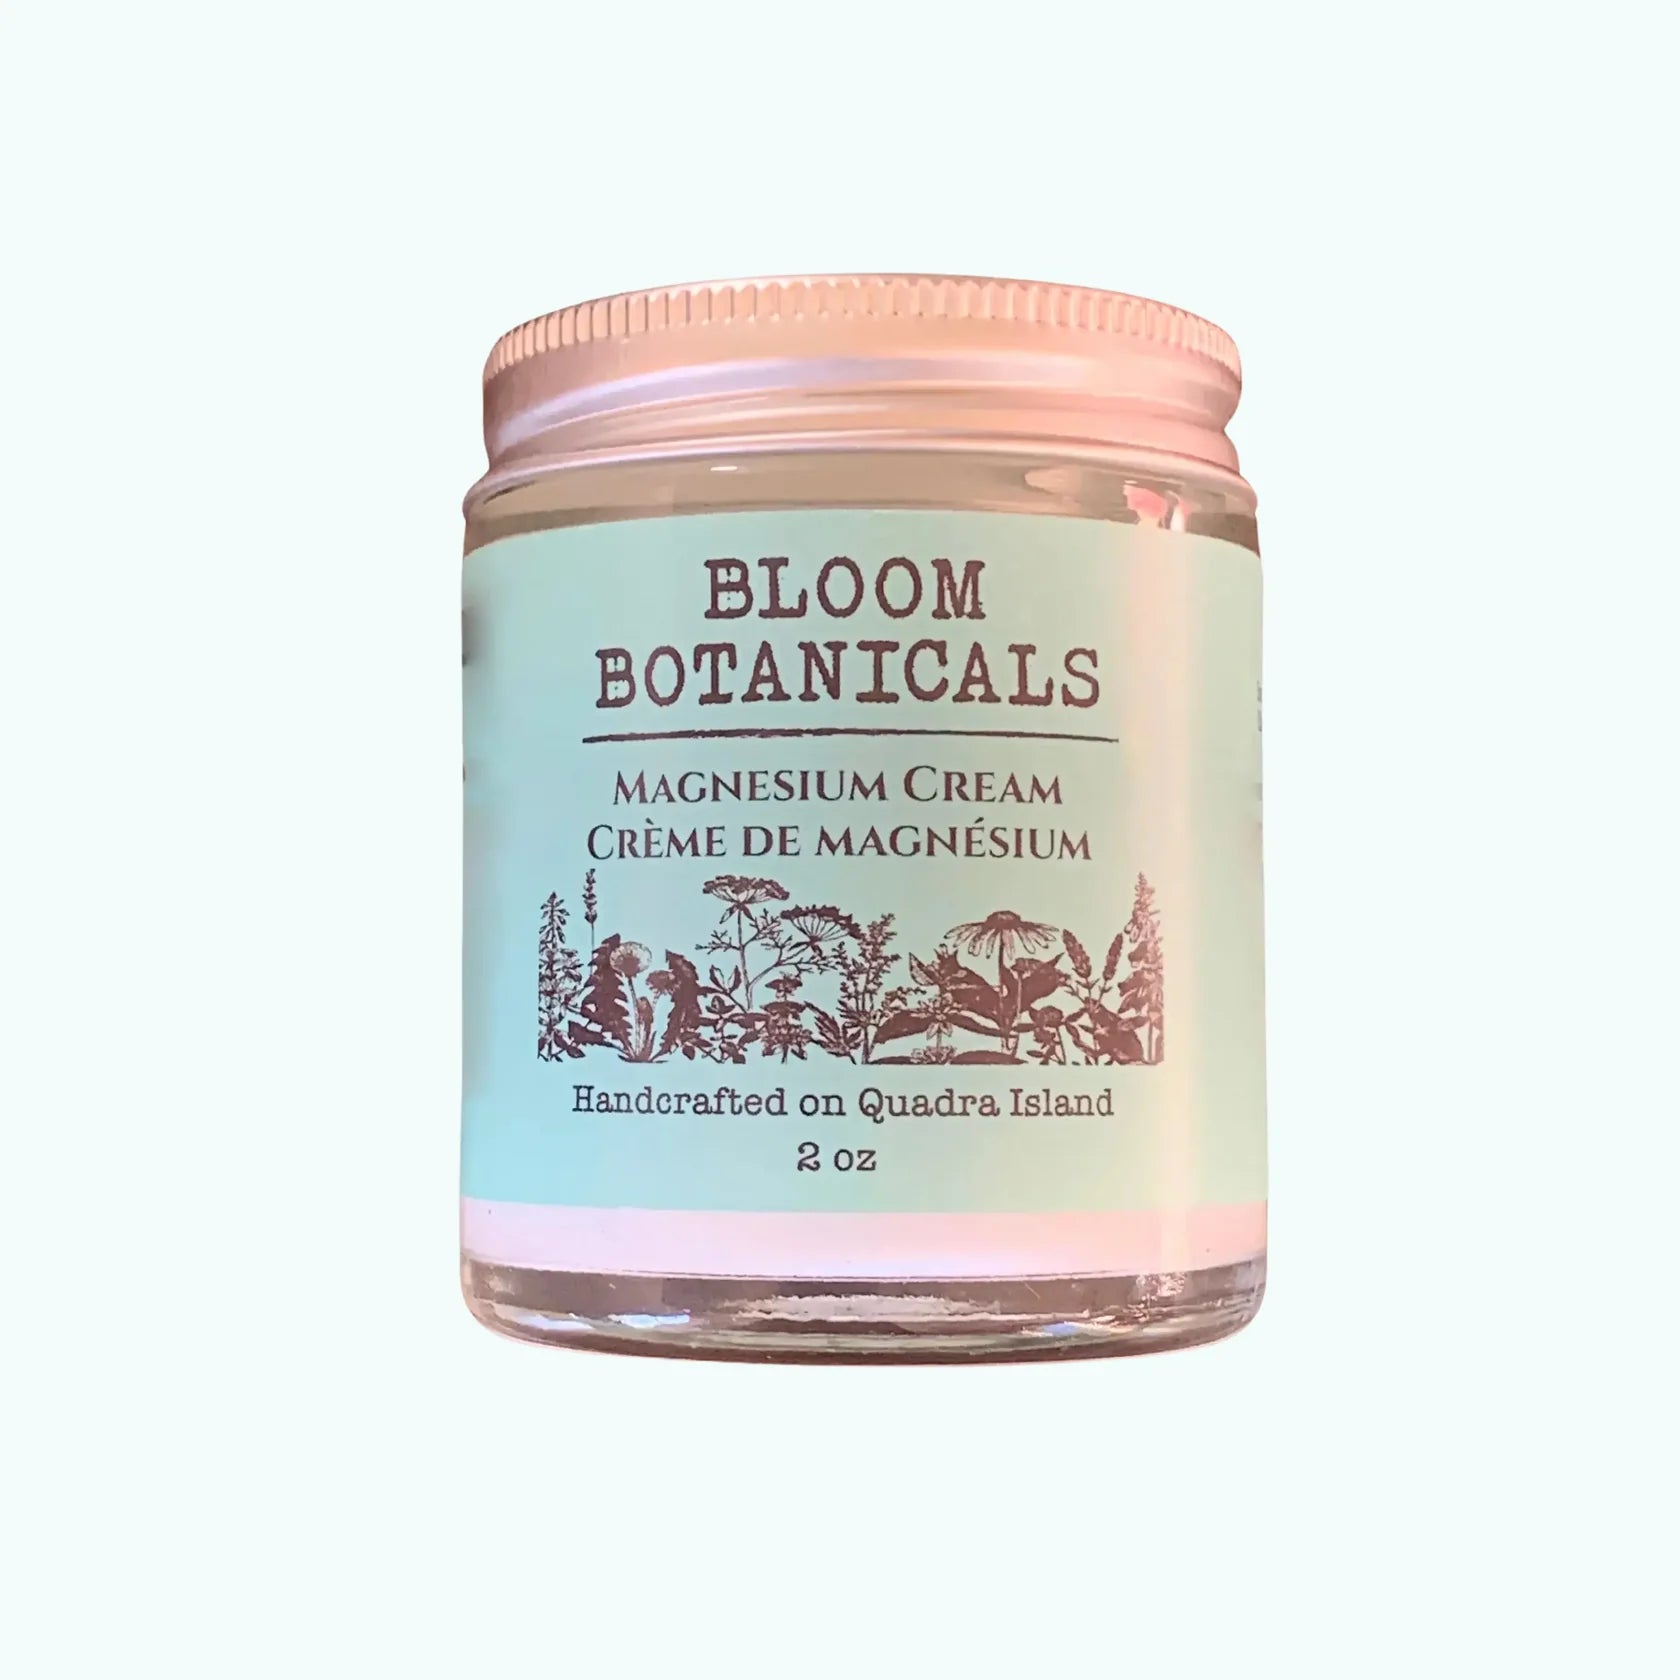 Bloom Botanicals Magnesium Cream